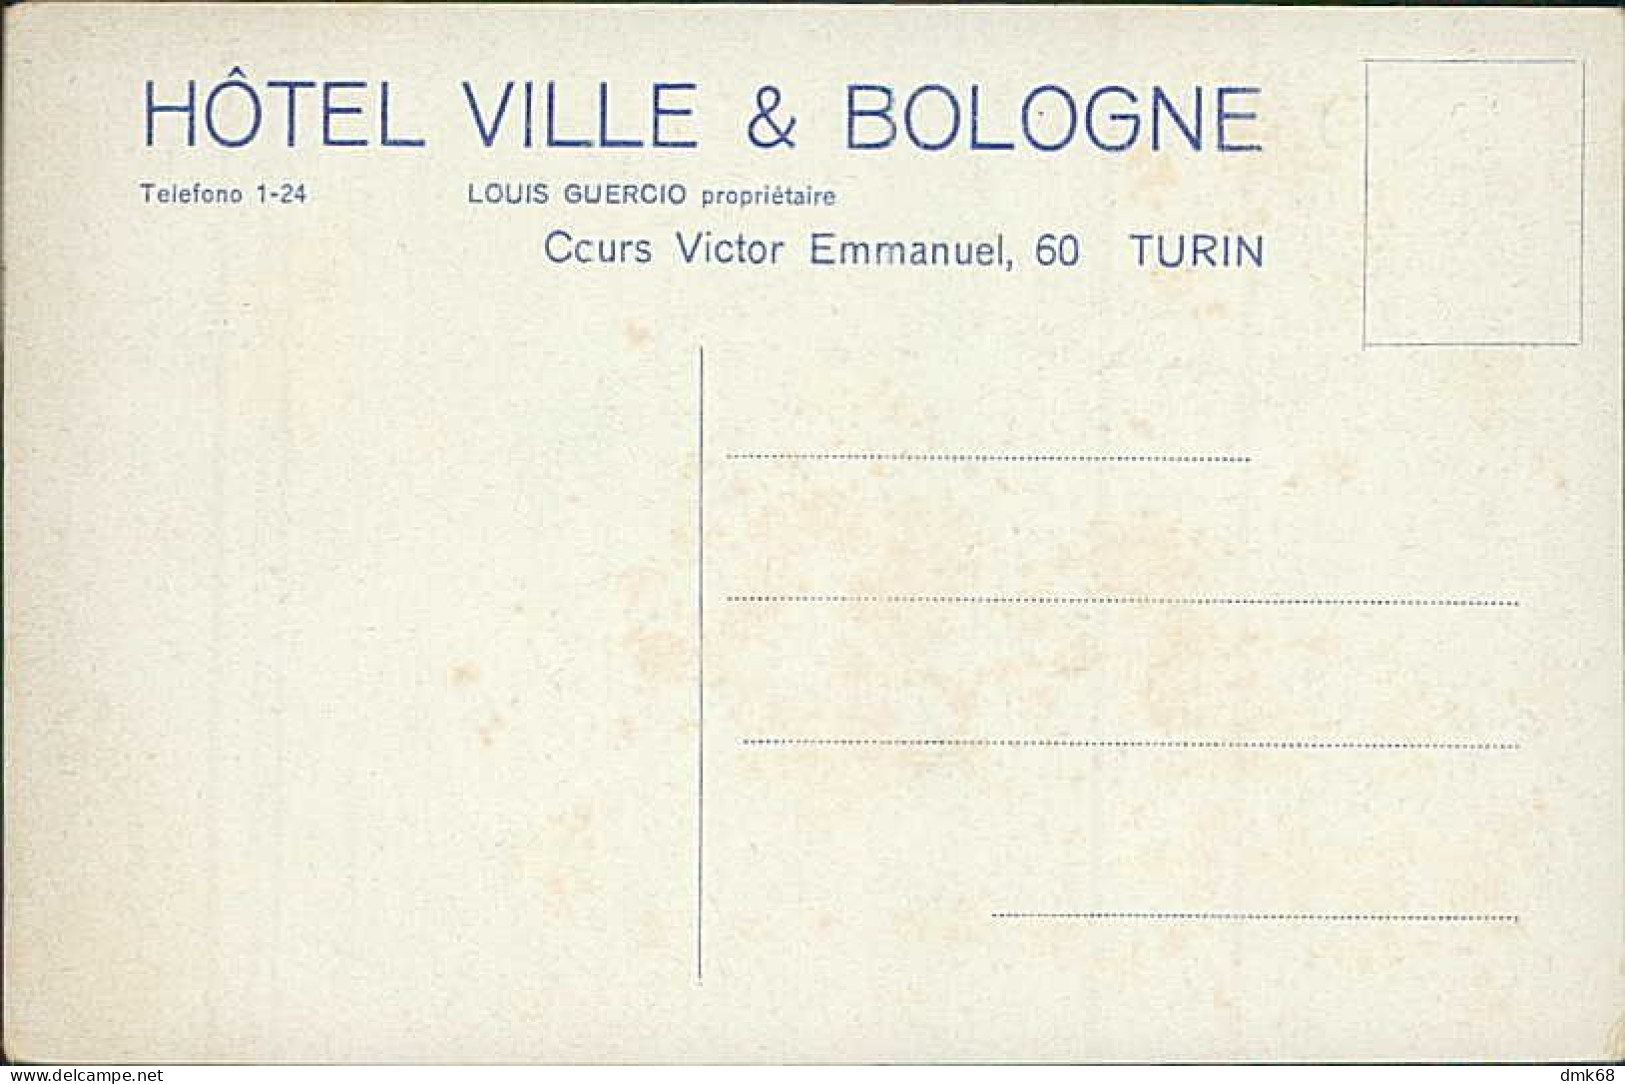 TORINO - HOTEL VILLE & BOLOGNE - 1910s (18282) - Bars, Hotels & Restaurants